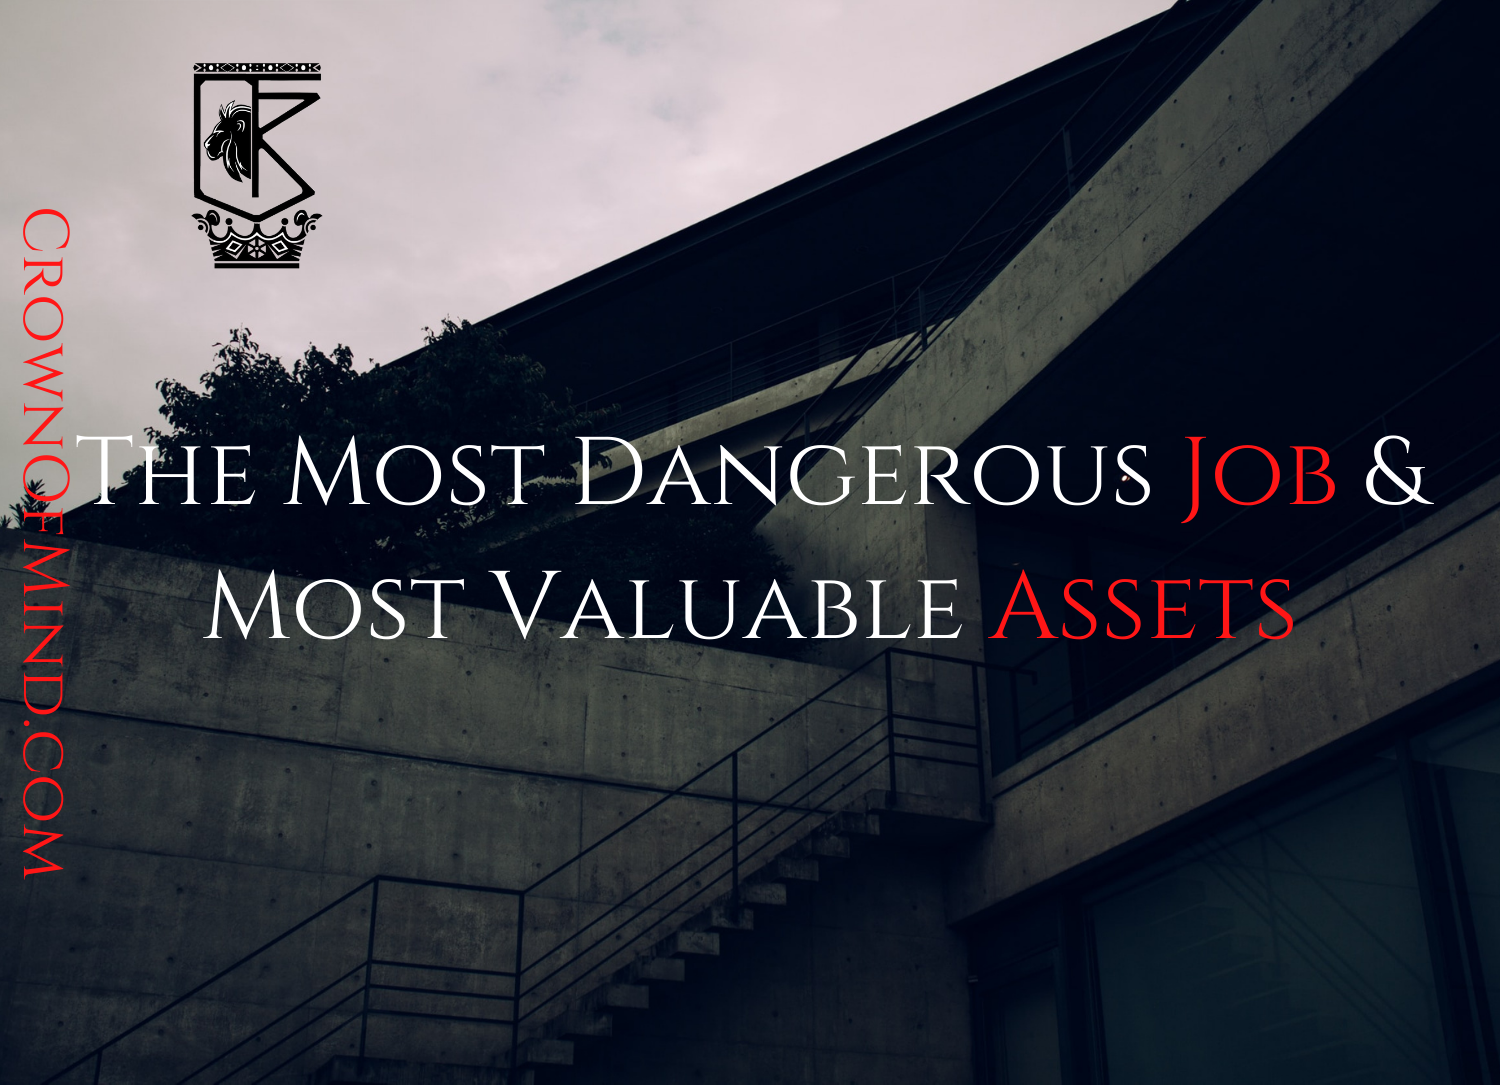 The Most Dangerous Job & Most Valuable Assets